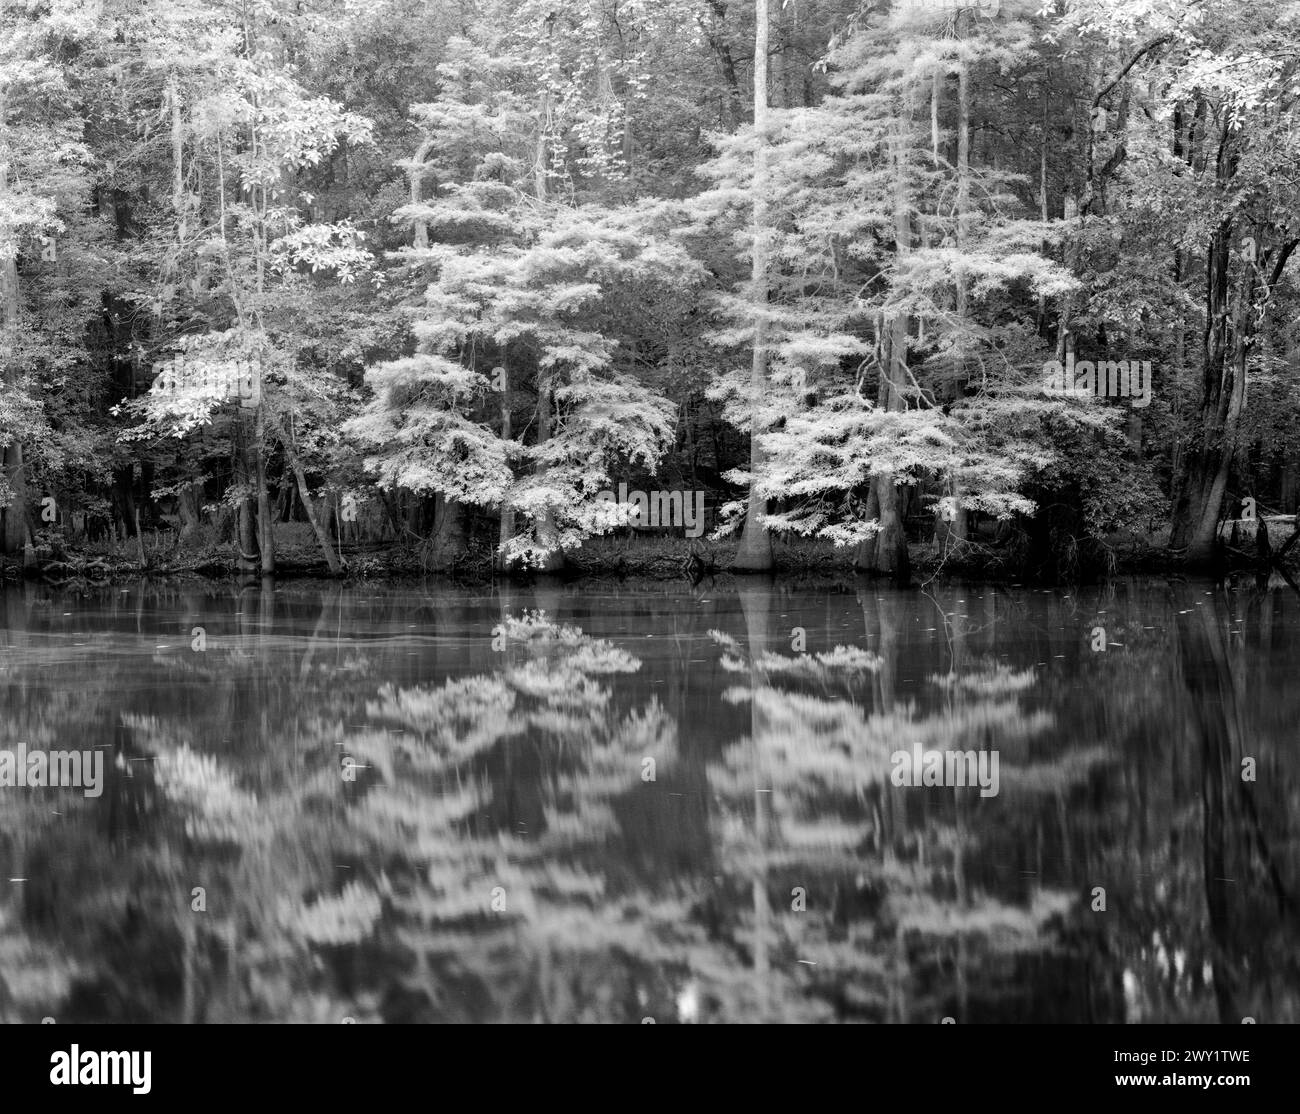 BW01683-00.....SOUTH CAROLINA - Reflections at Weston Lake in Congaree National Park. Stock Photo